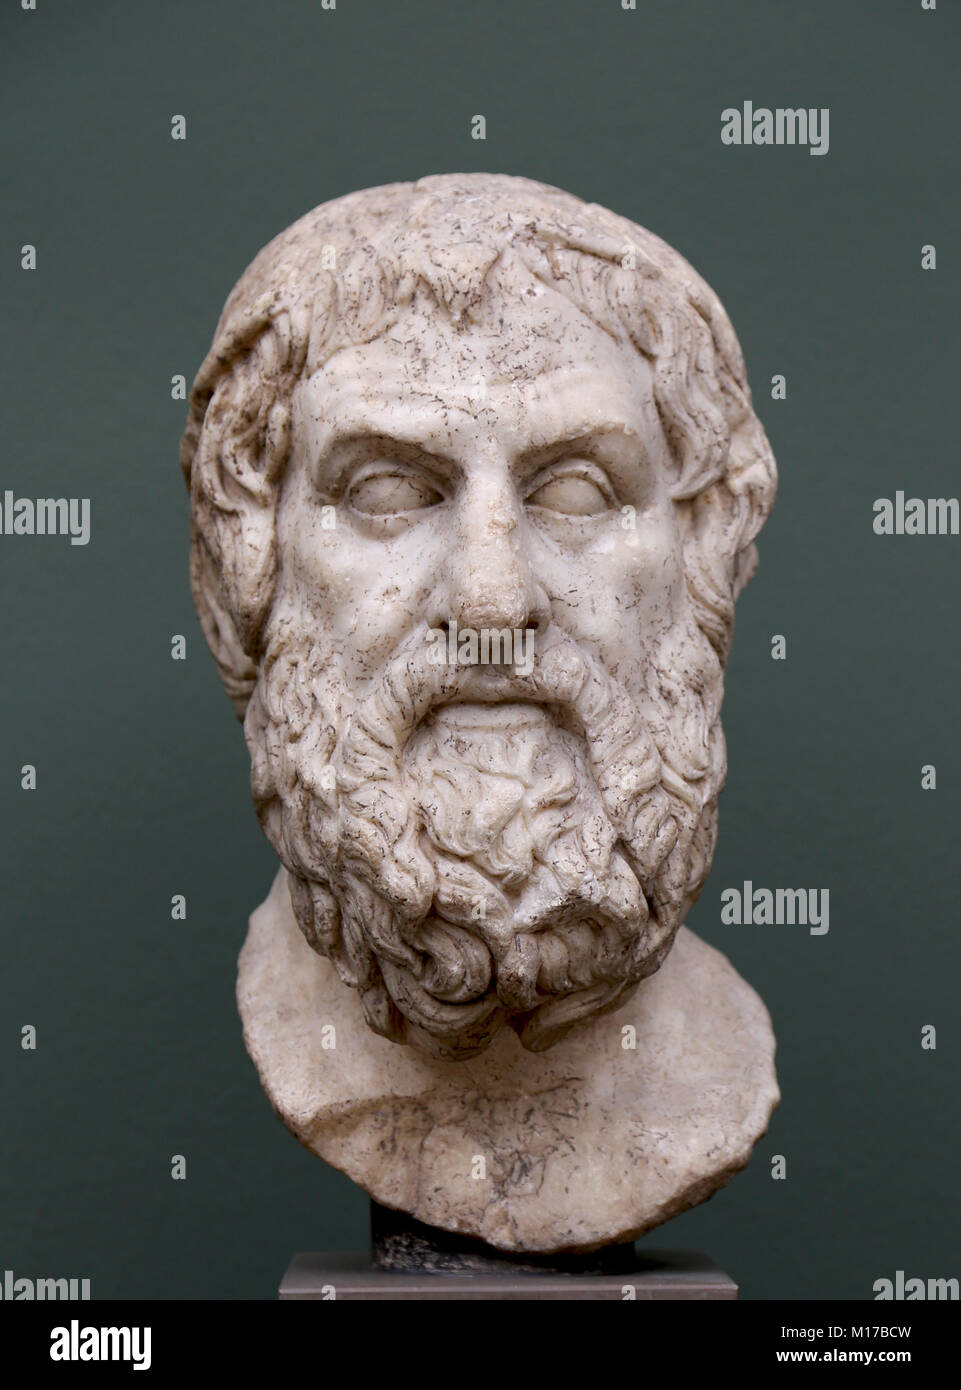 Il Poeta Tragico Sofocle. Grande scrittore,(495-406 A.C.) marmo. Copia romana di un originale greco, C. 270 BC. Foto Stock